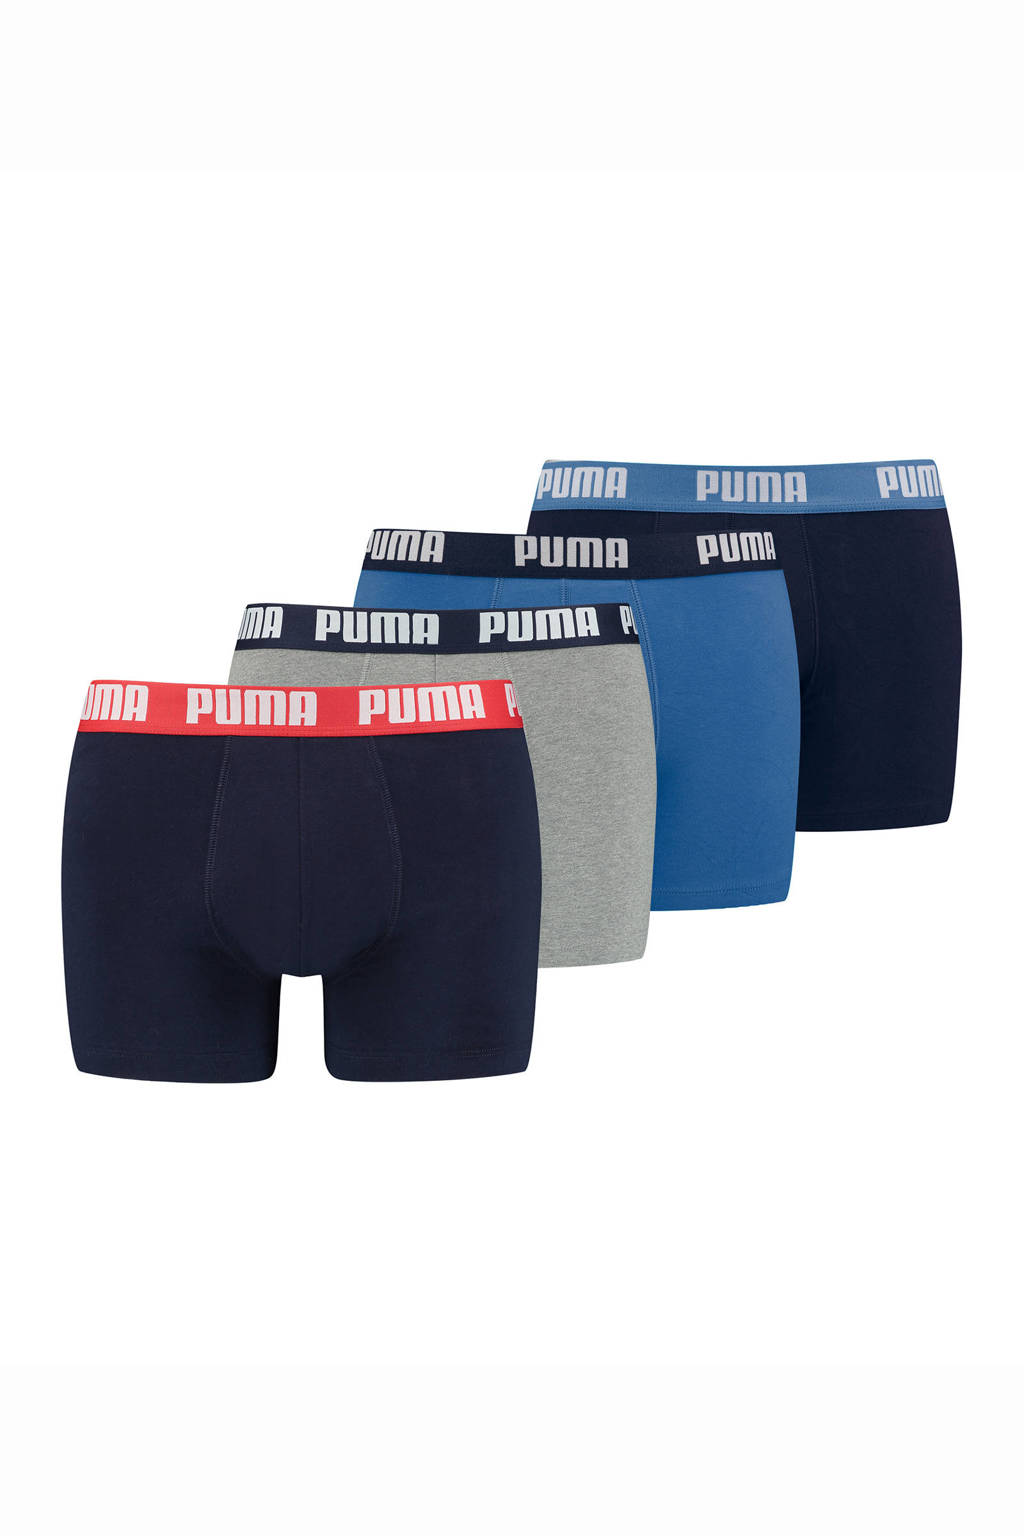 Puma boxershort (set van 4), Blauw/grijs/zwart/rood